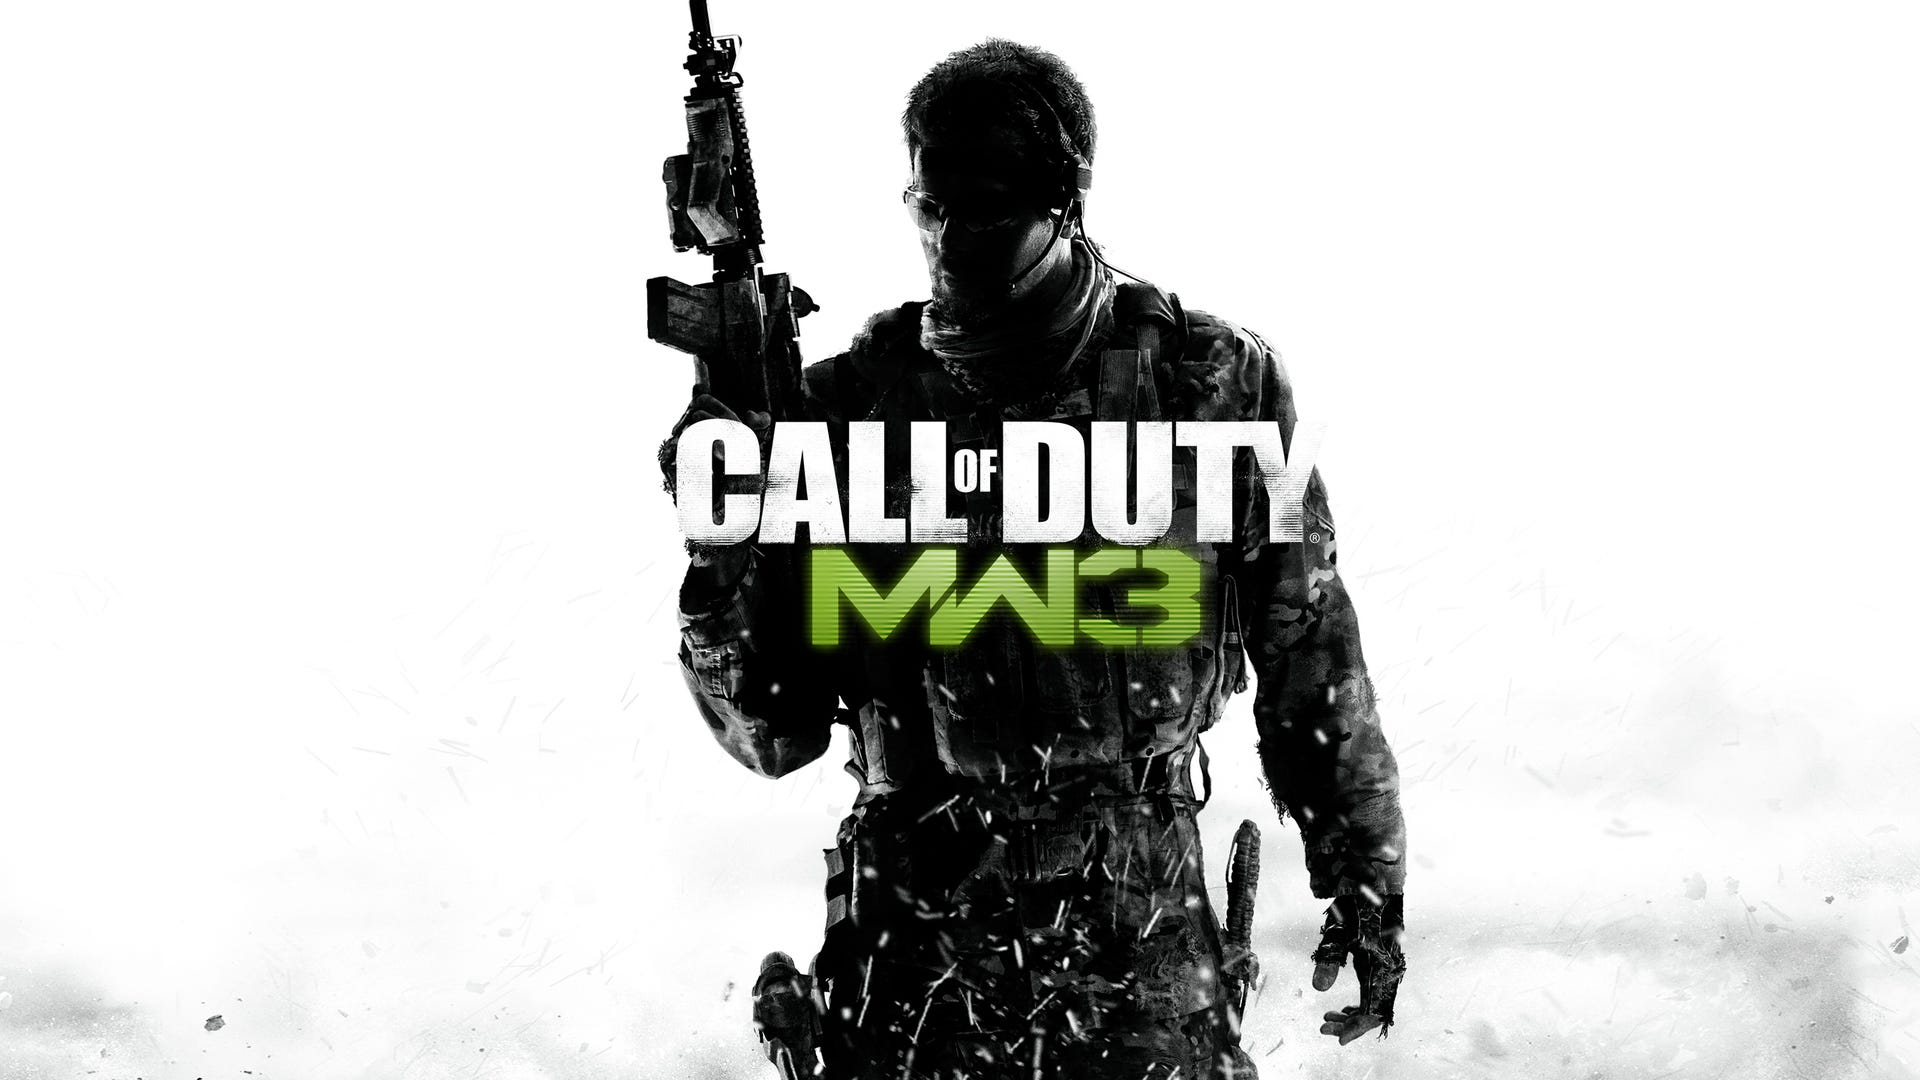 Aanhankelijk Het Verhoogd Modern Warfare 3 remastered is not a thing, says Activision | VG247